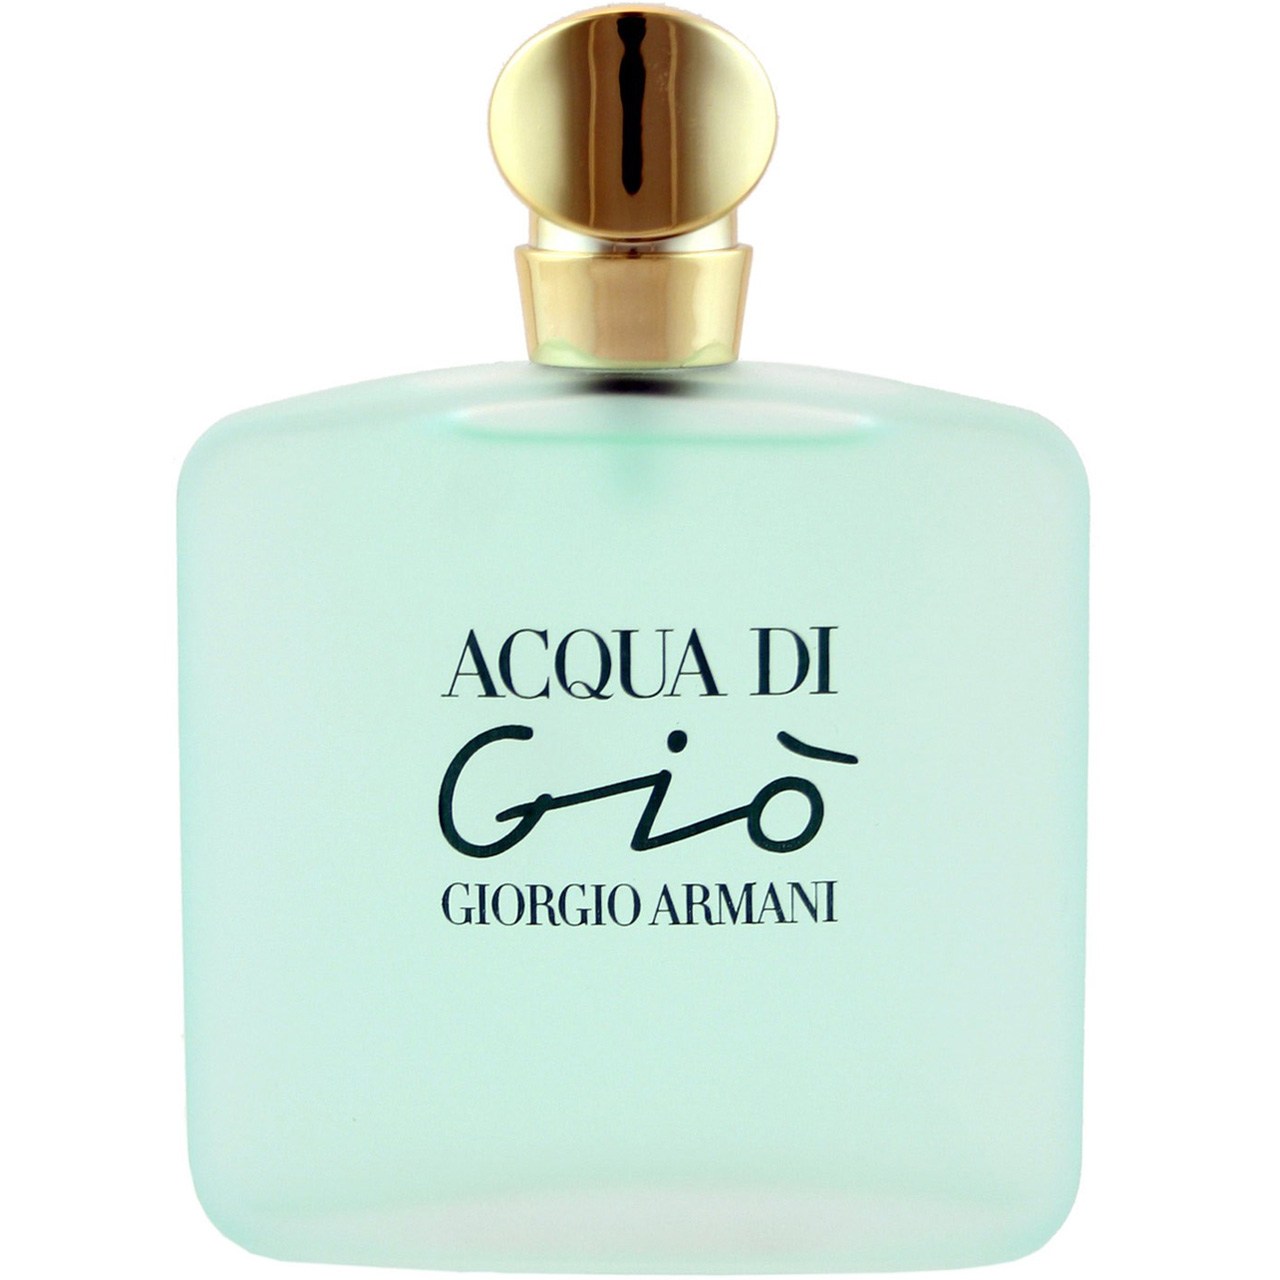 ادو تویلت زنانه جورجیو آرمانی مدل Acqua Di Gio حجم 100 میلی لیتر